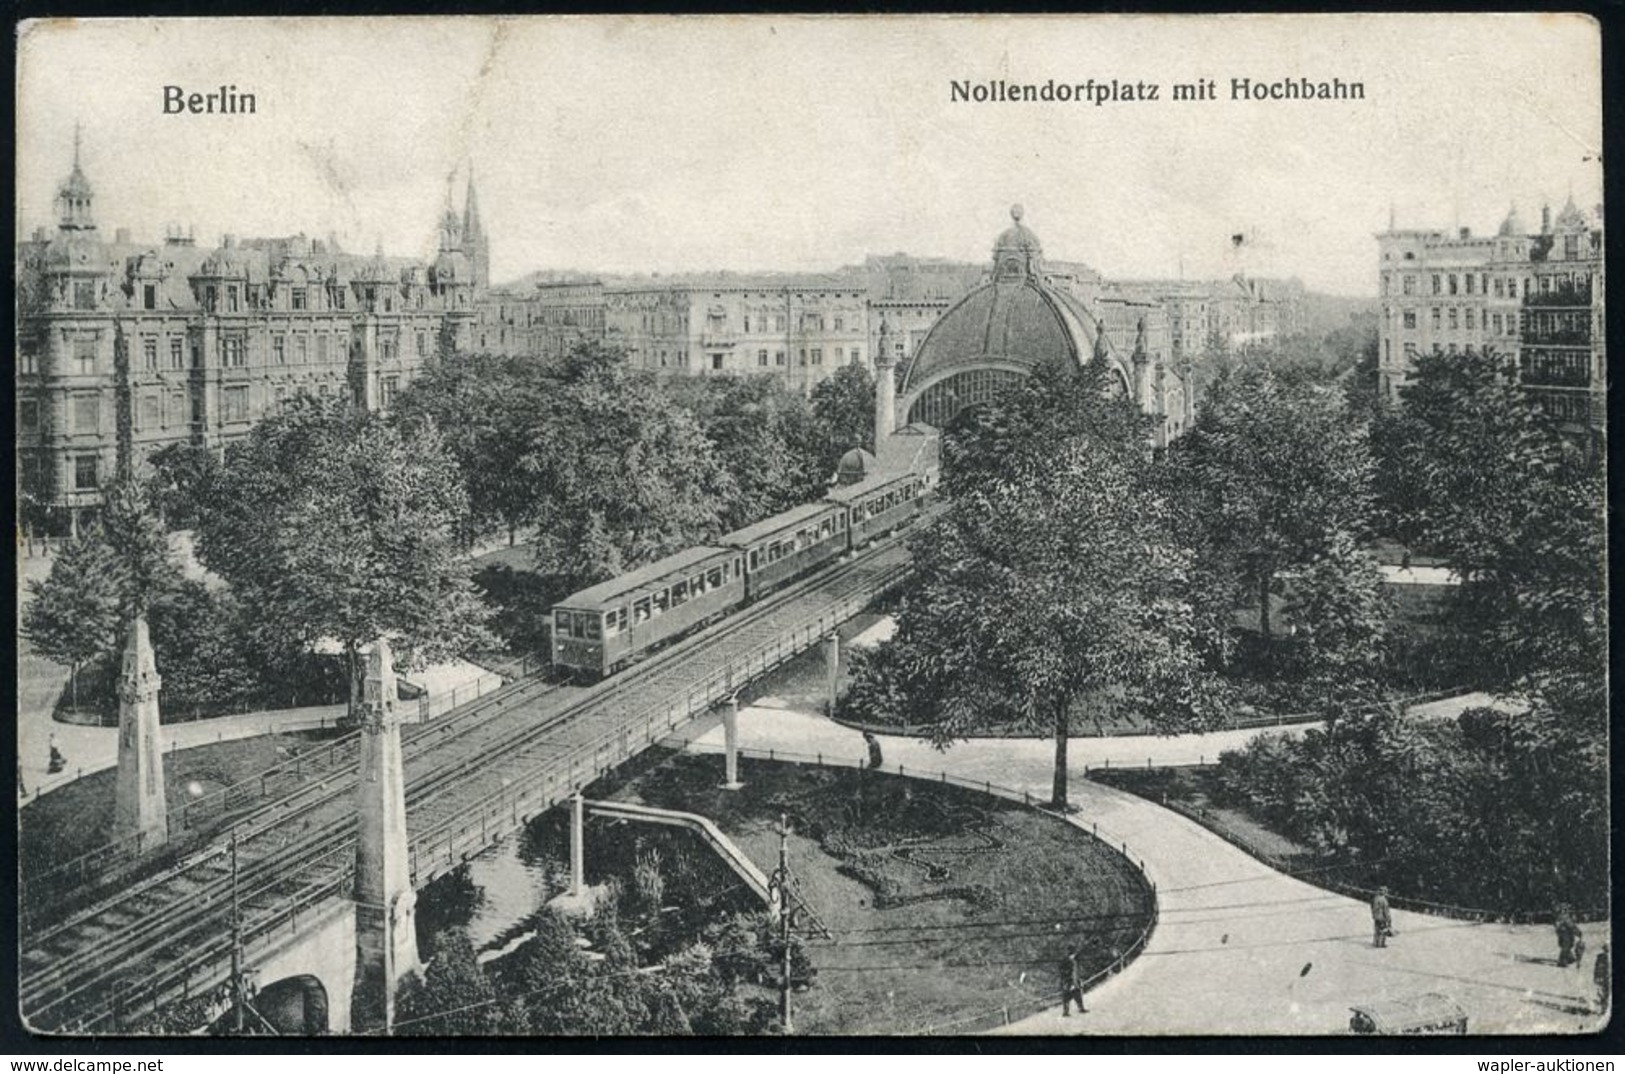 UNTERGRUNDBAHN /U-BAHN : Berlin-Schöneberg 1902/32 U-Bahnhof Nollendorfplatz, 9 verschiedene s/w.-Foto-Ak., teils gebr.,